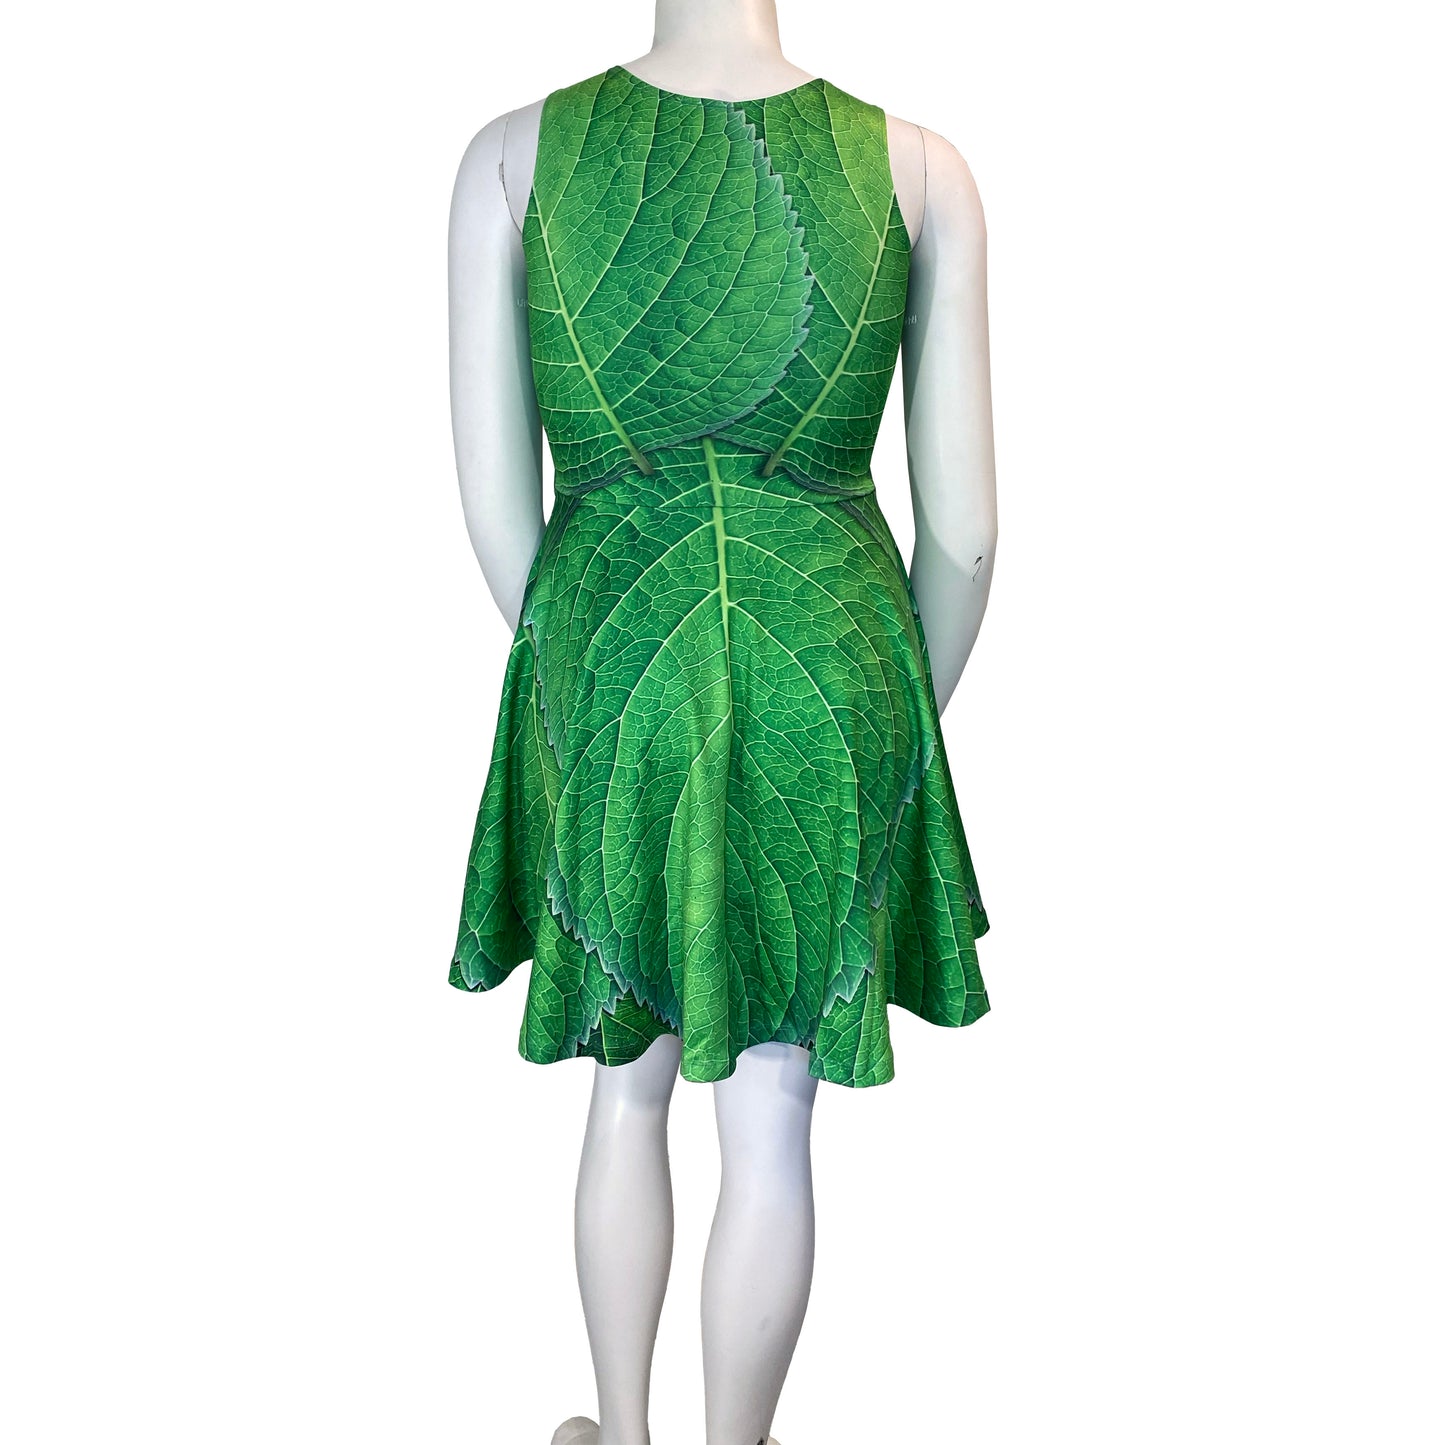 Tinker Bell Peter Pan Inspired Sleeveless Dress